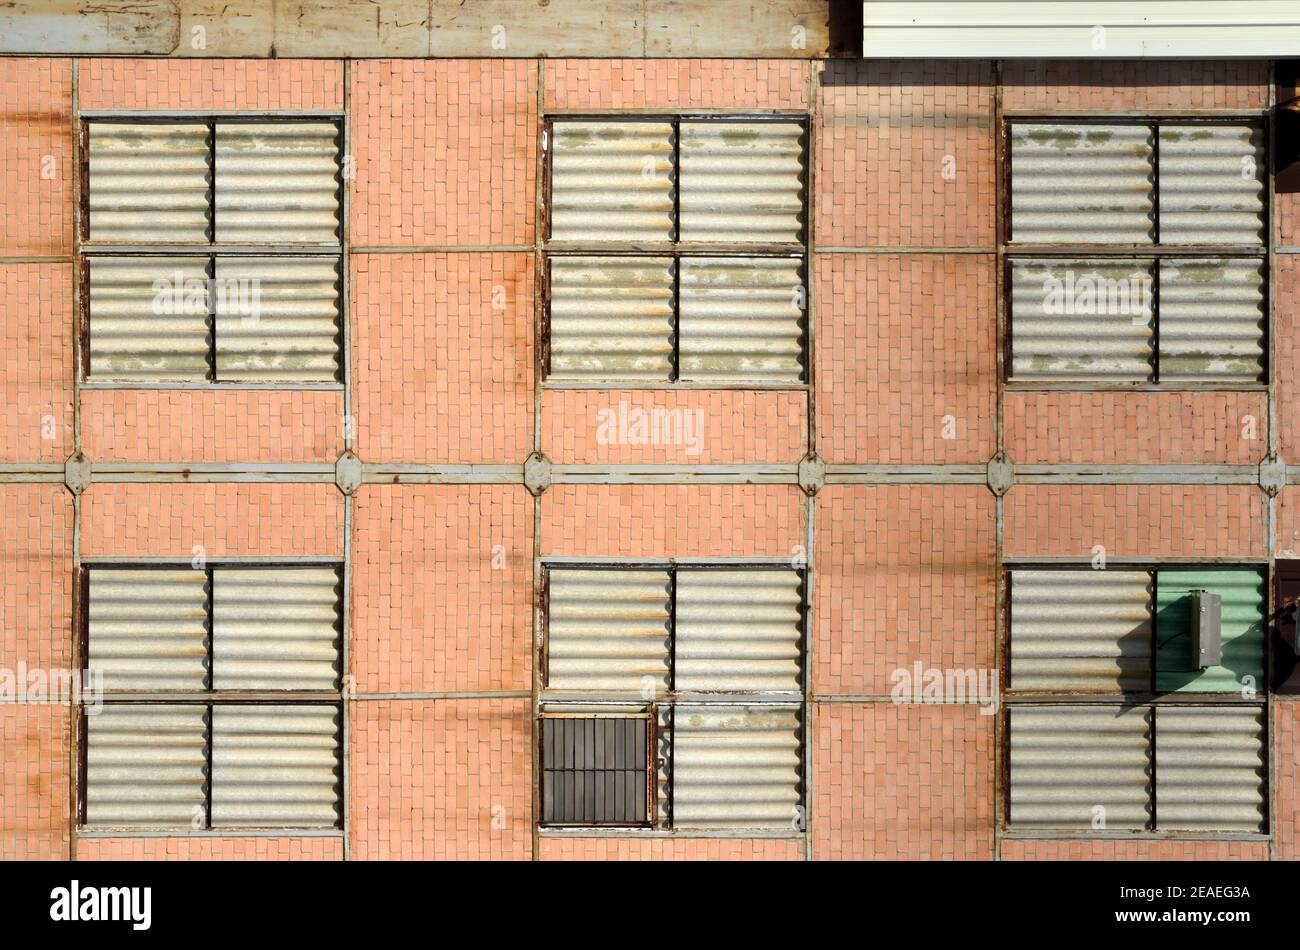 Quadratische Fenster oder Fenster Muster der Brick Industrial Building in Die alten Werften in La Ciotat Bouches-du-Rhone Provence Frankreich Stockfoto